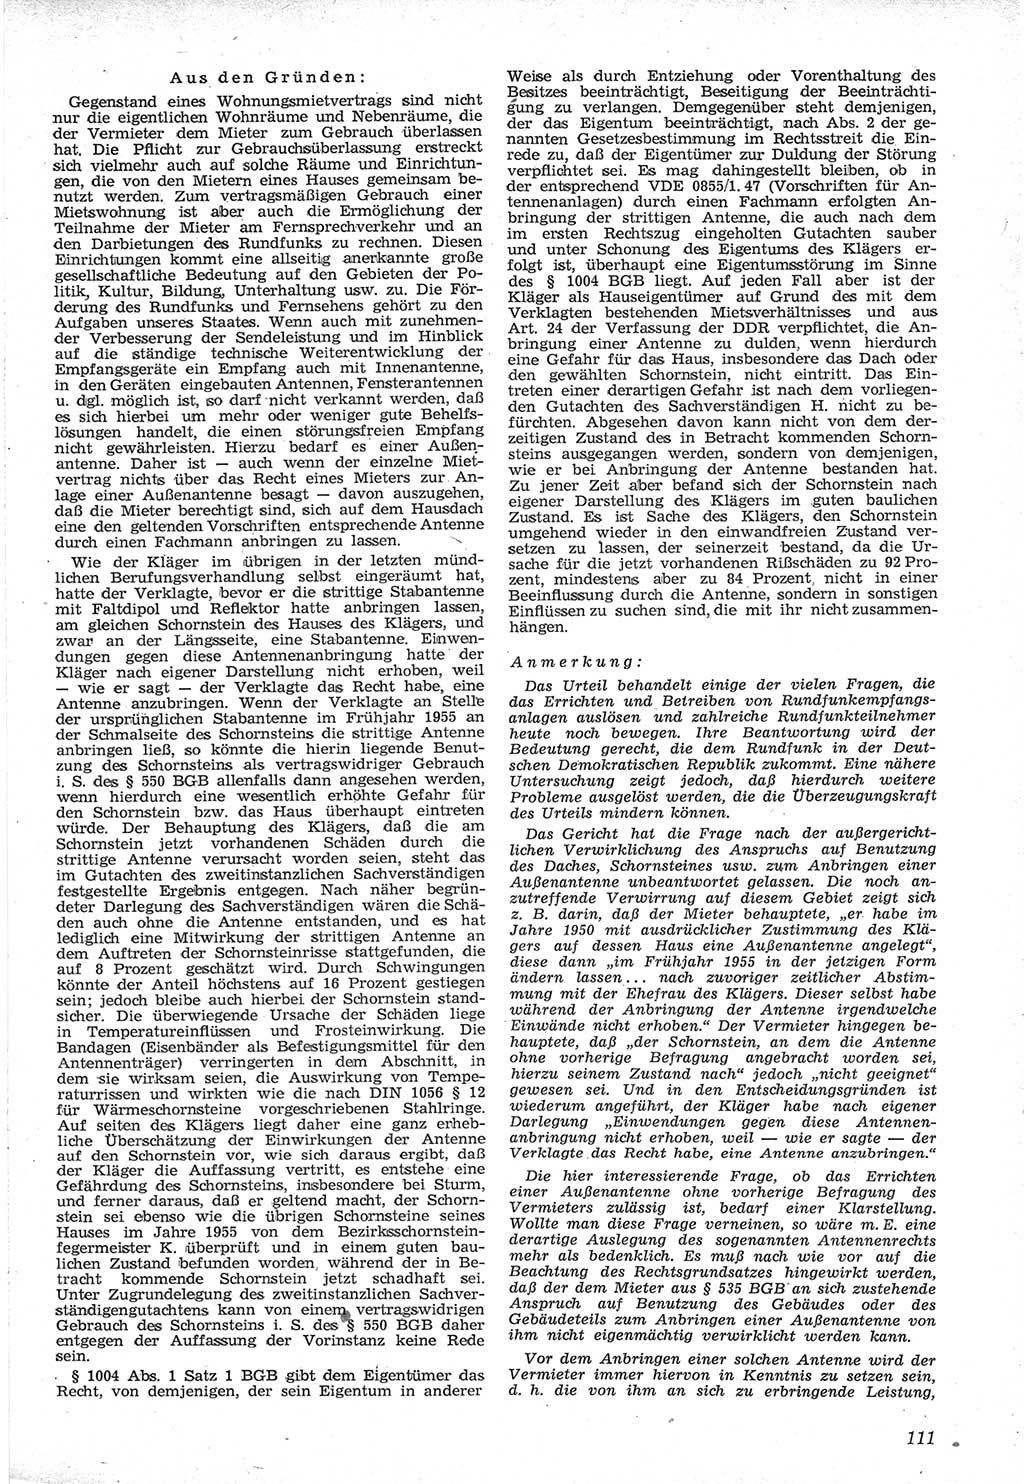 Neue Justiz (NJ), Zeitschrift für Recht und Rechtswissenschaft [Deutsche Demokratische Republik (DDR)], 12. Jahrgang 1958, Seite 111 (NJ DDR 1958, S. 111)